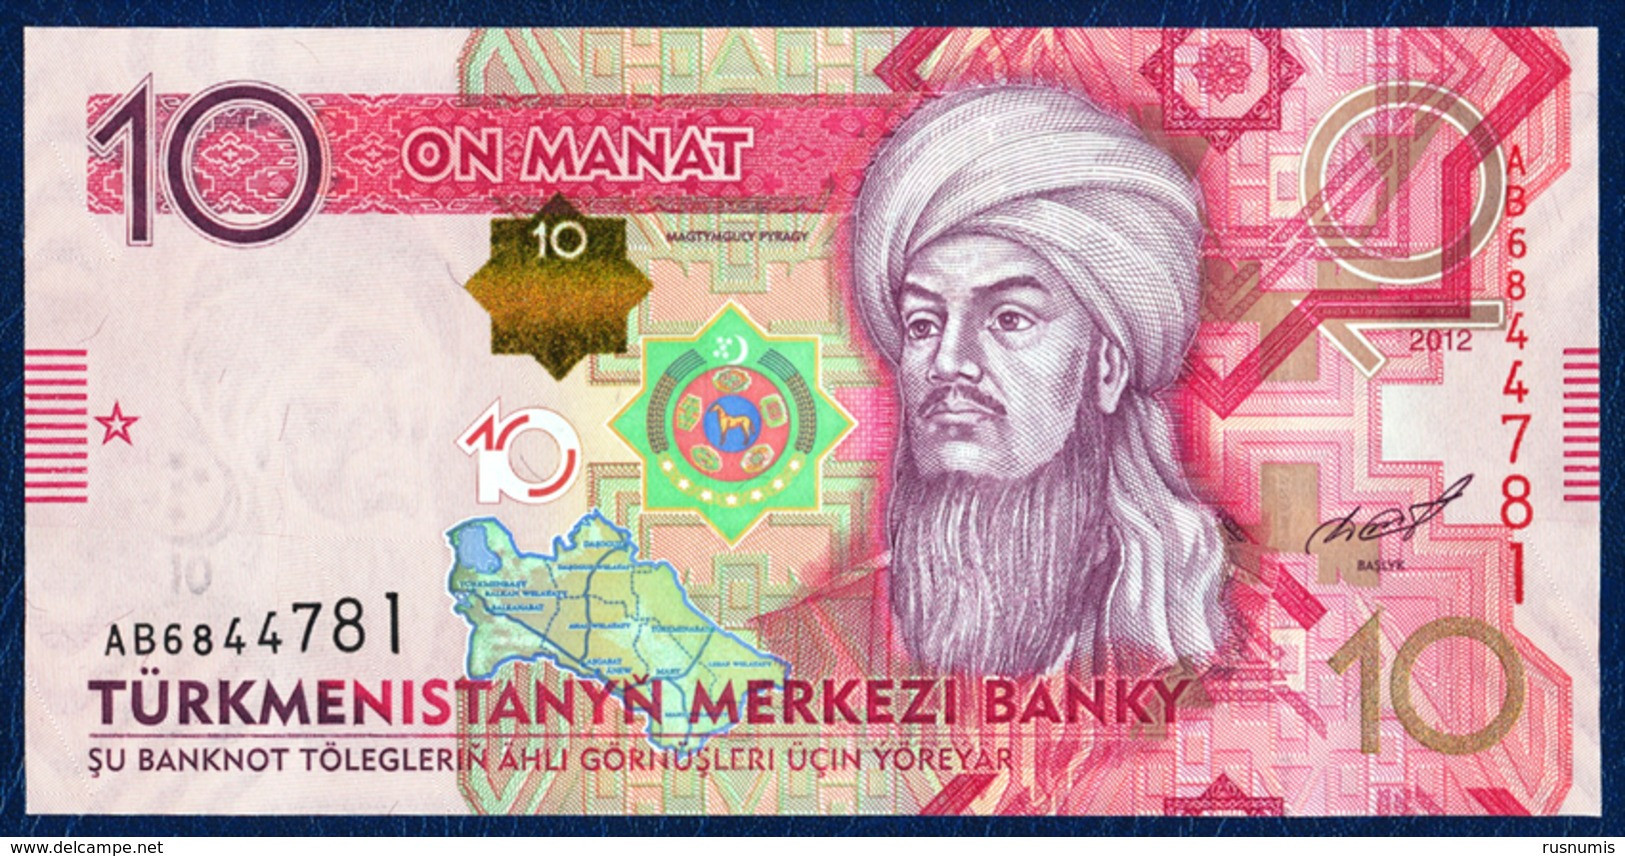 TURKMENISTAN 10 MANAT P-31 CENTRAL BANK 2012 UNC - Turkmenistán